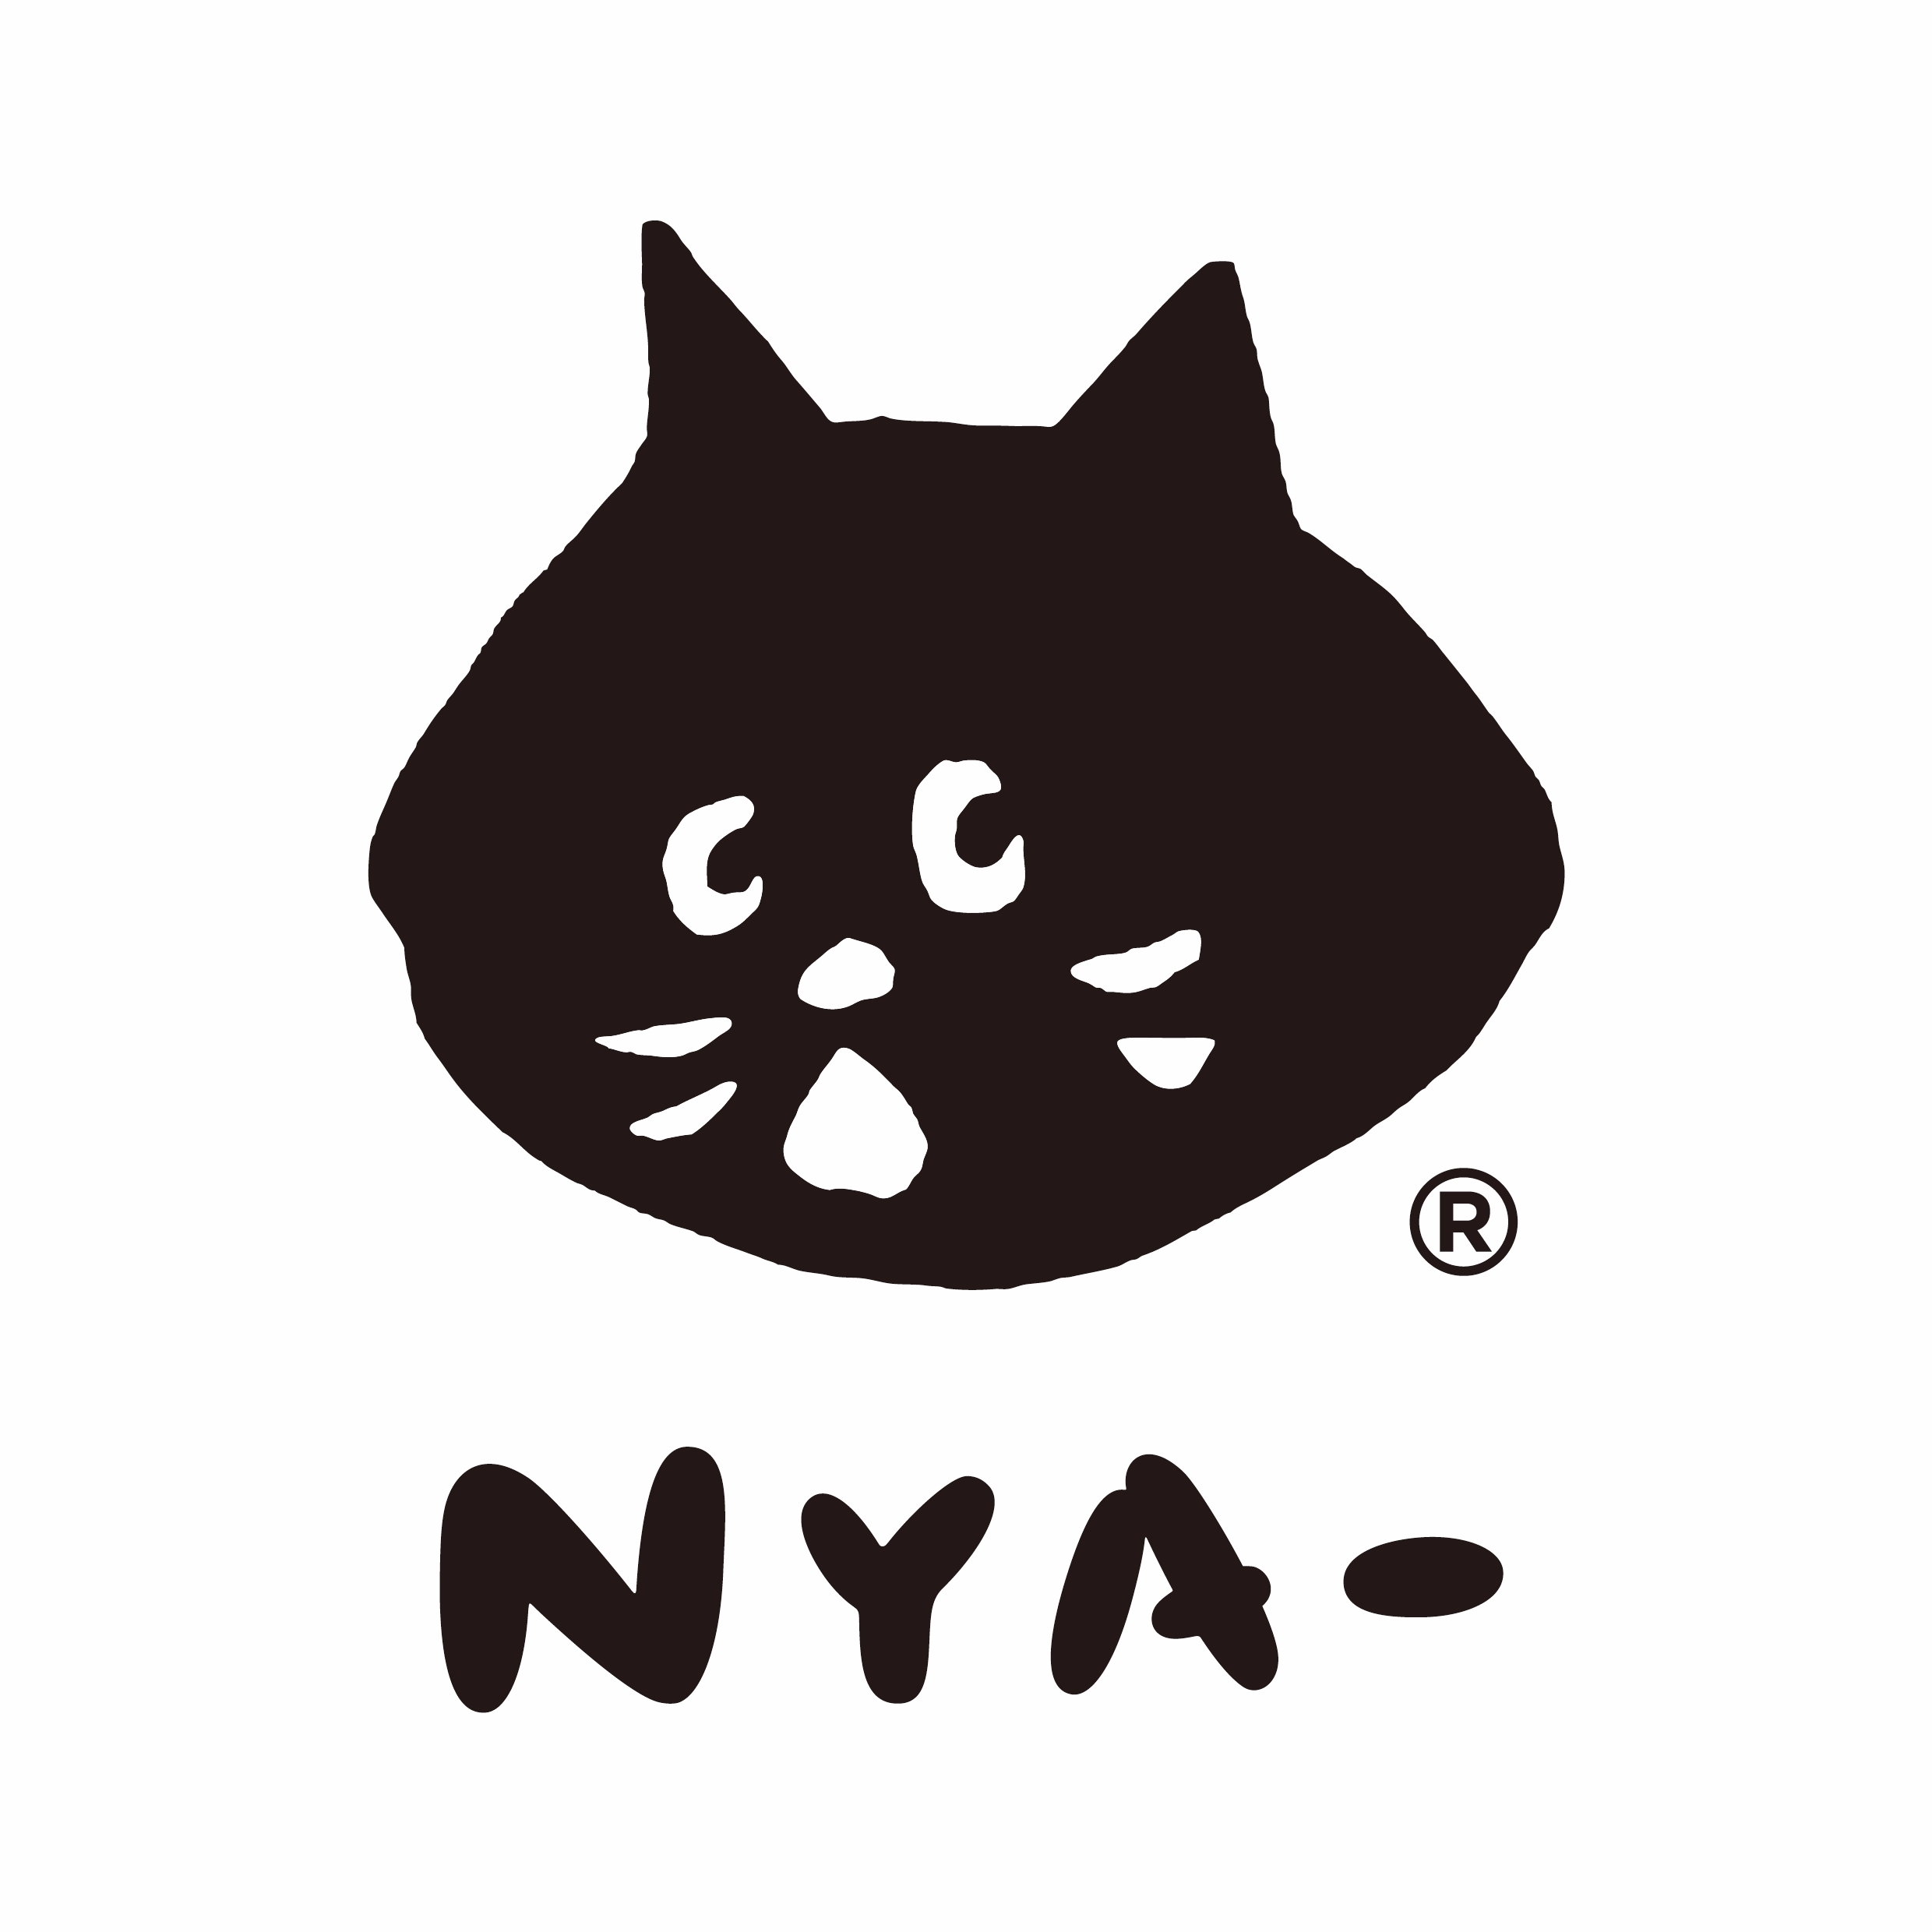 日本三宅一生旗下超人氣品牌「 Nya-」正式襲捲全台引領年輕時尚新潮流  !